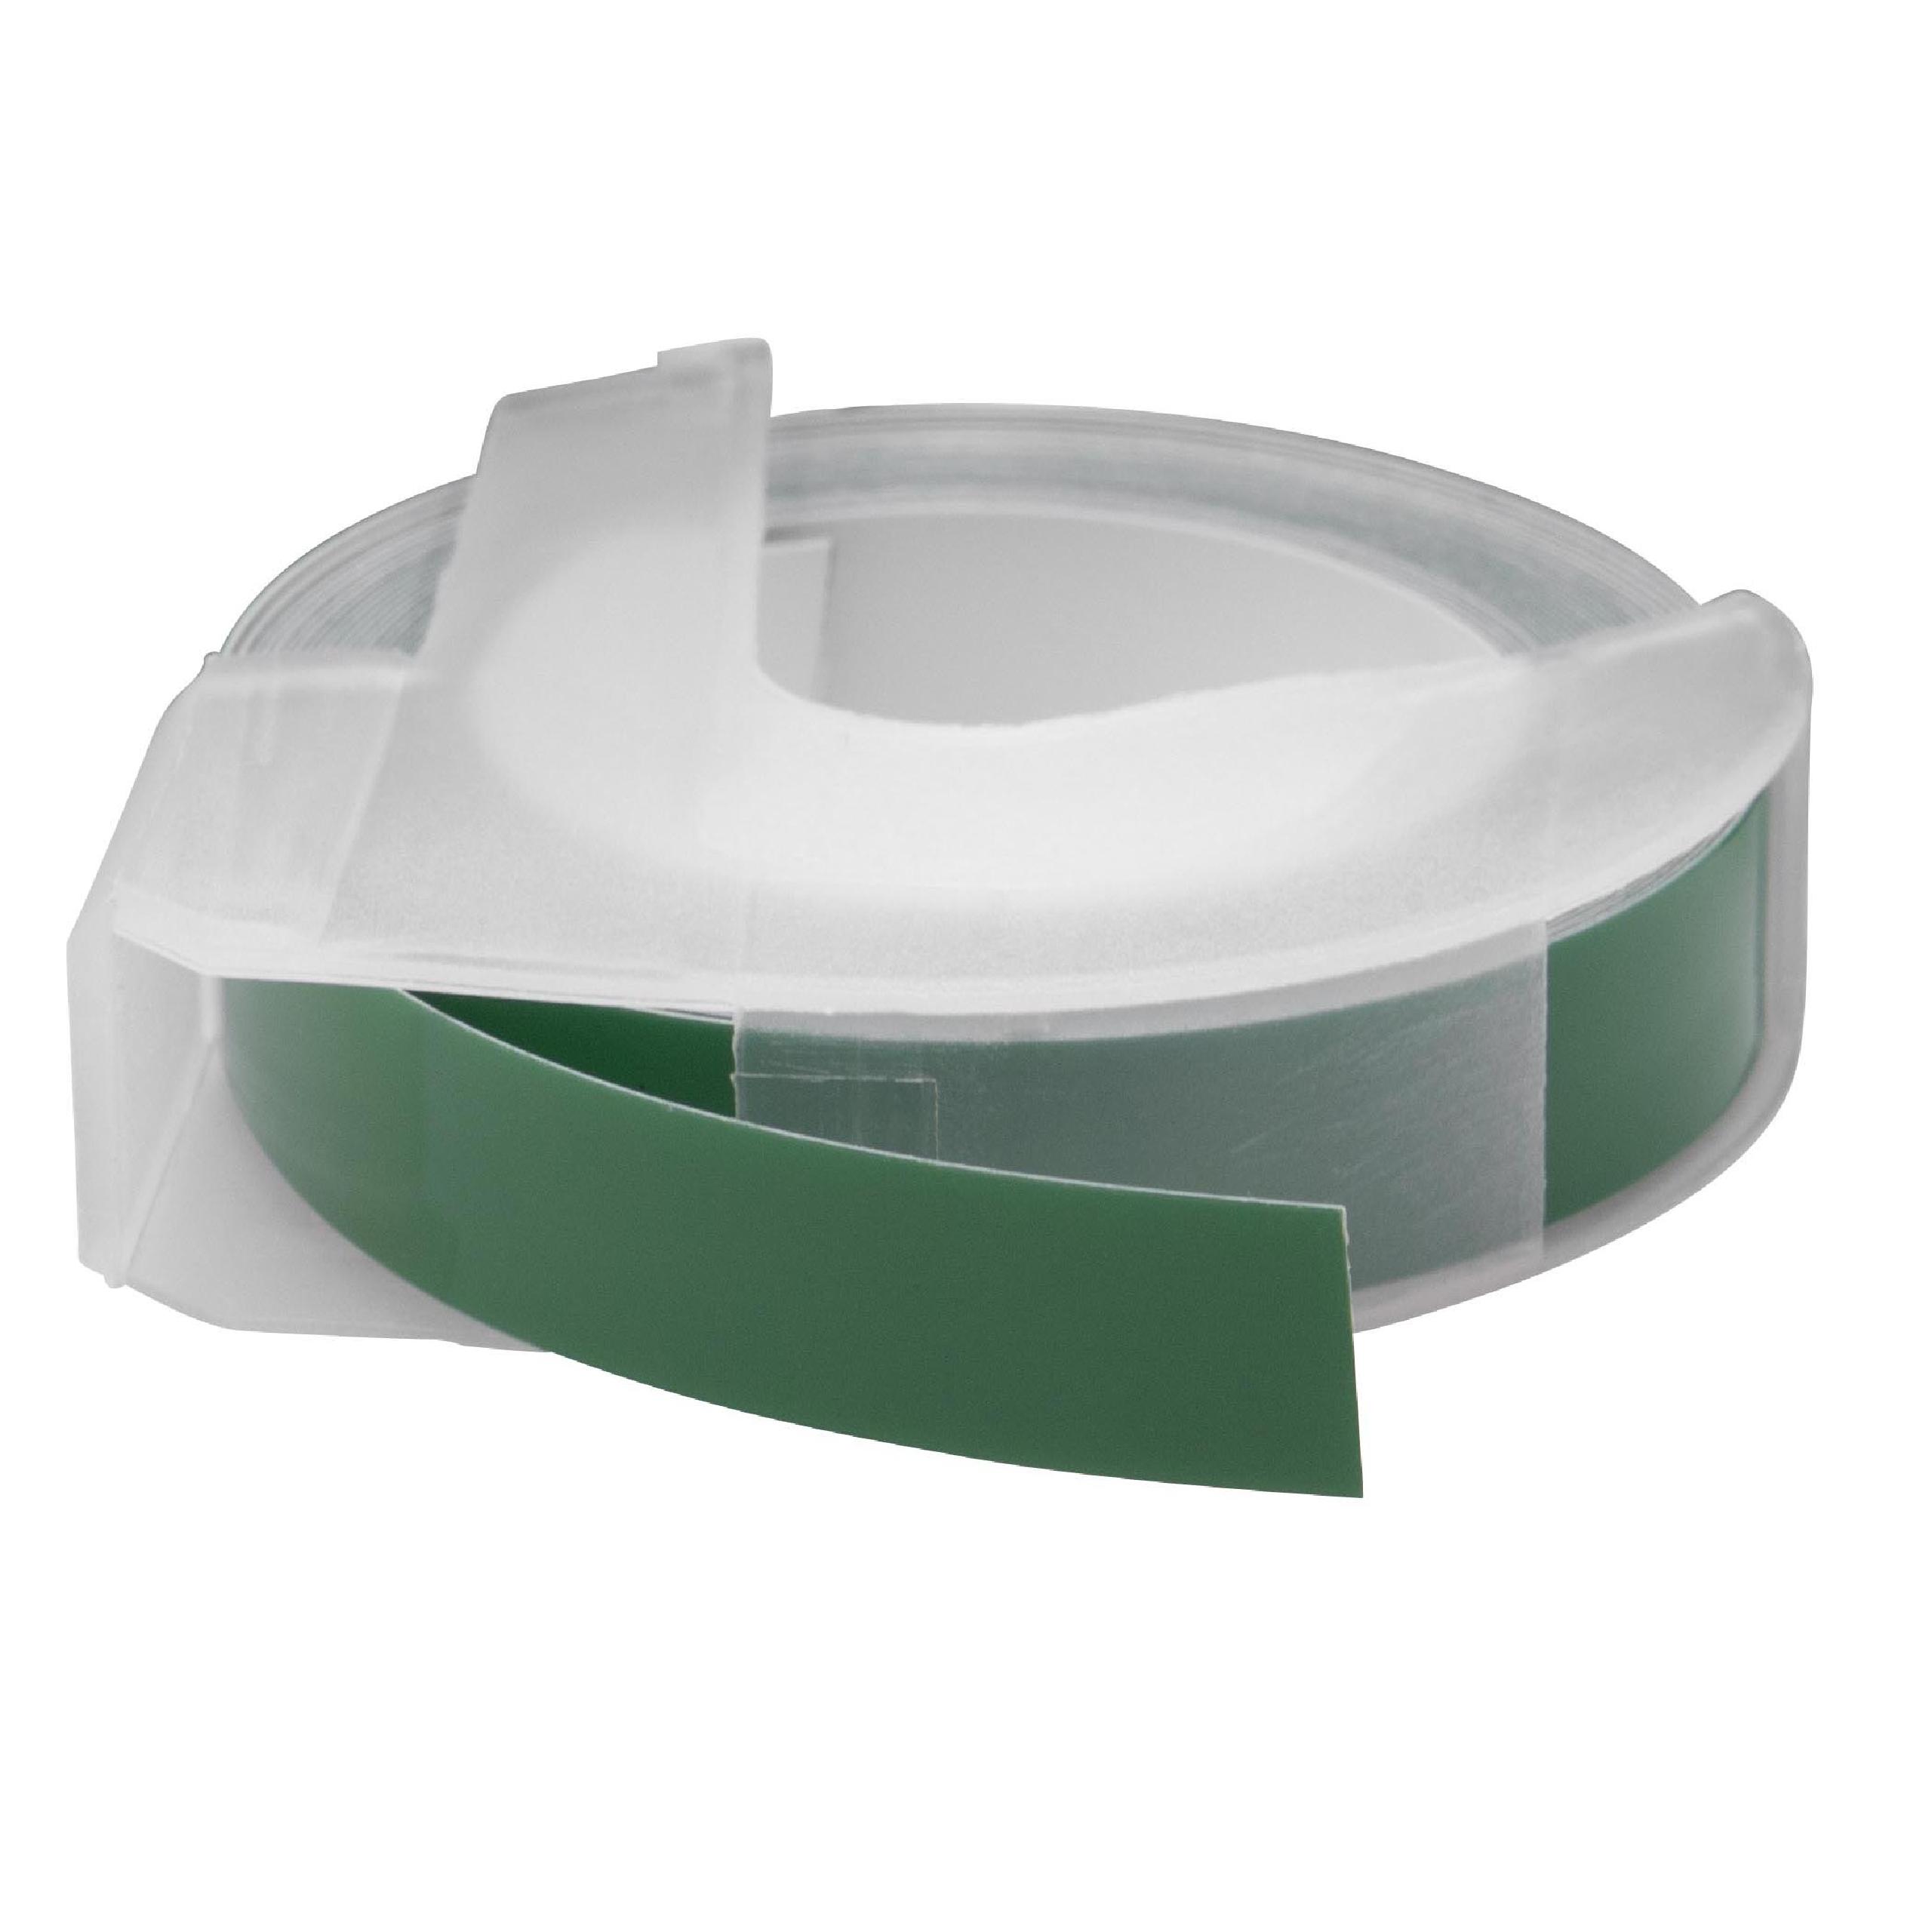 Nastro goffratura 3D sostituisce Dymo 520105, S0898160 per etichettatrice Motex 9mm bianco su verde